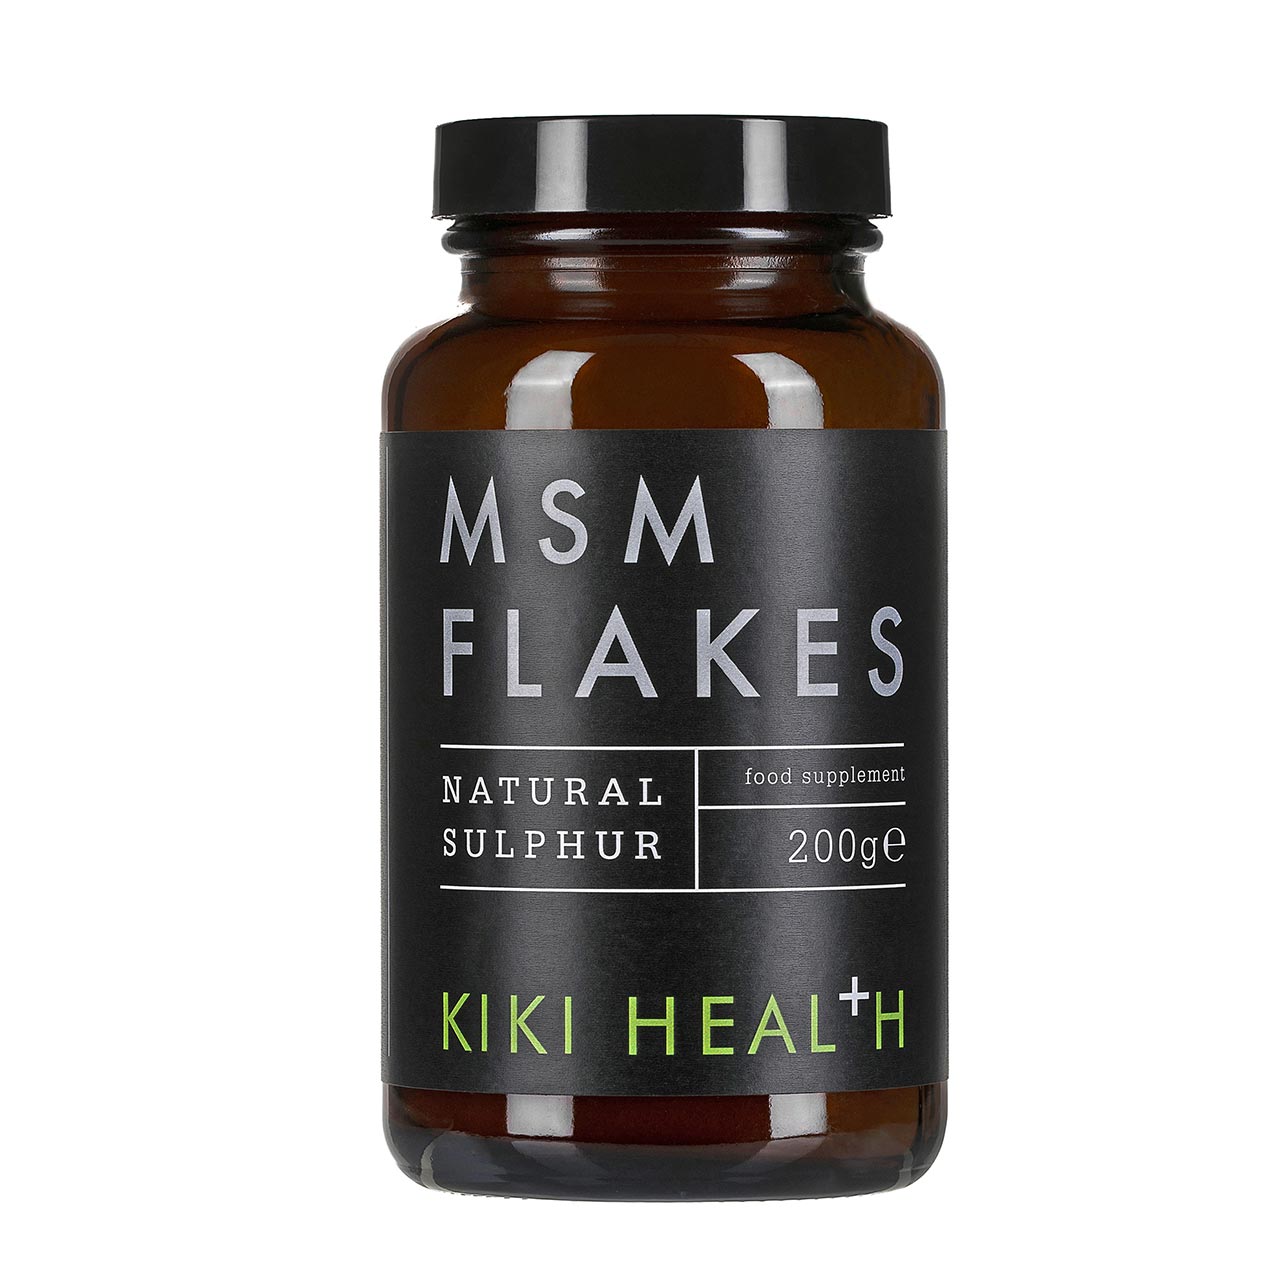 KIKI HEALTH MSM FLAKES - 200G PULVER